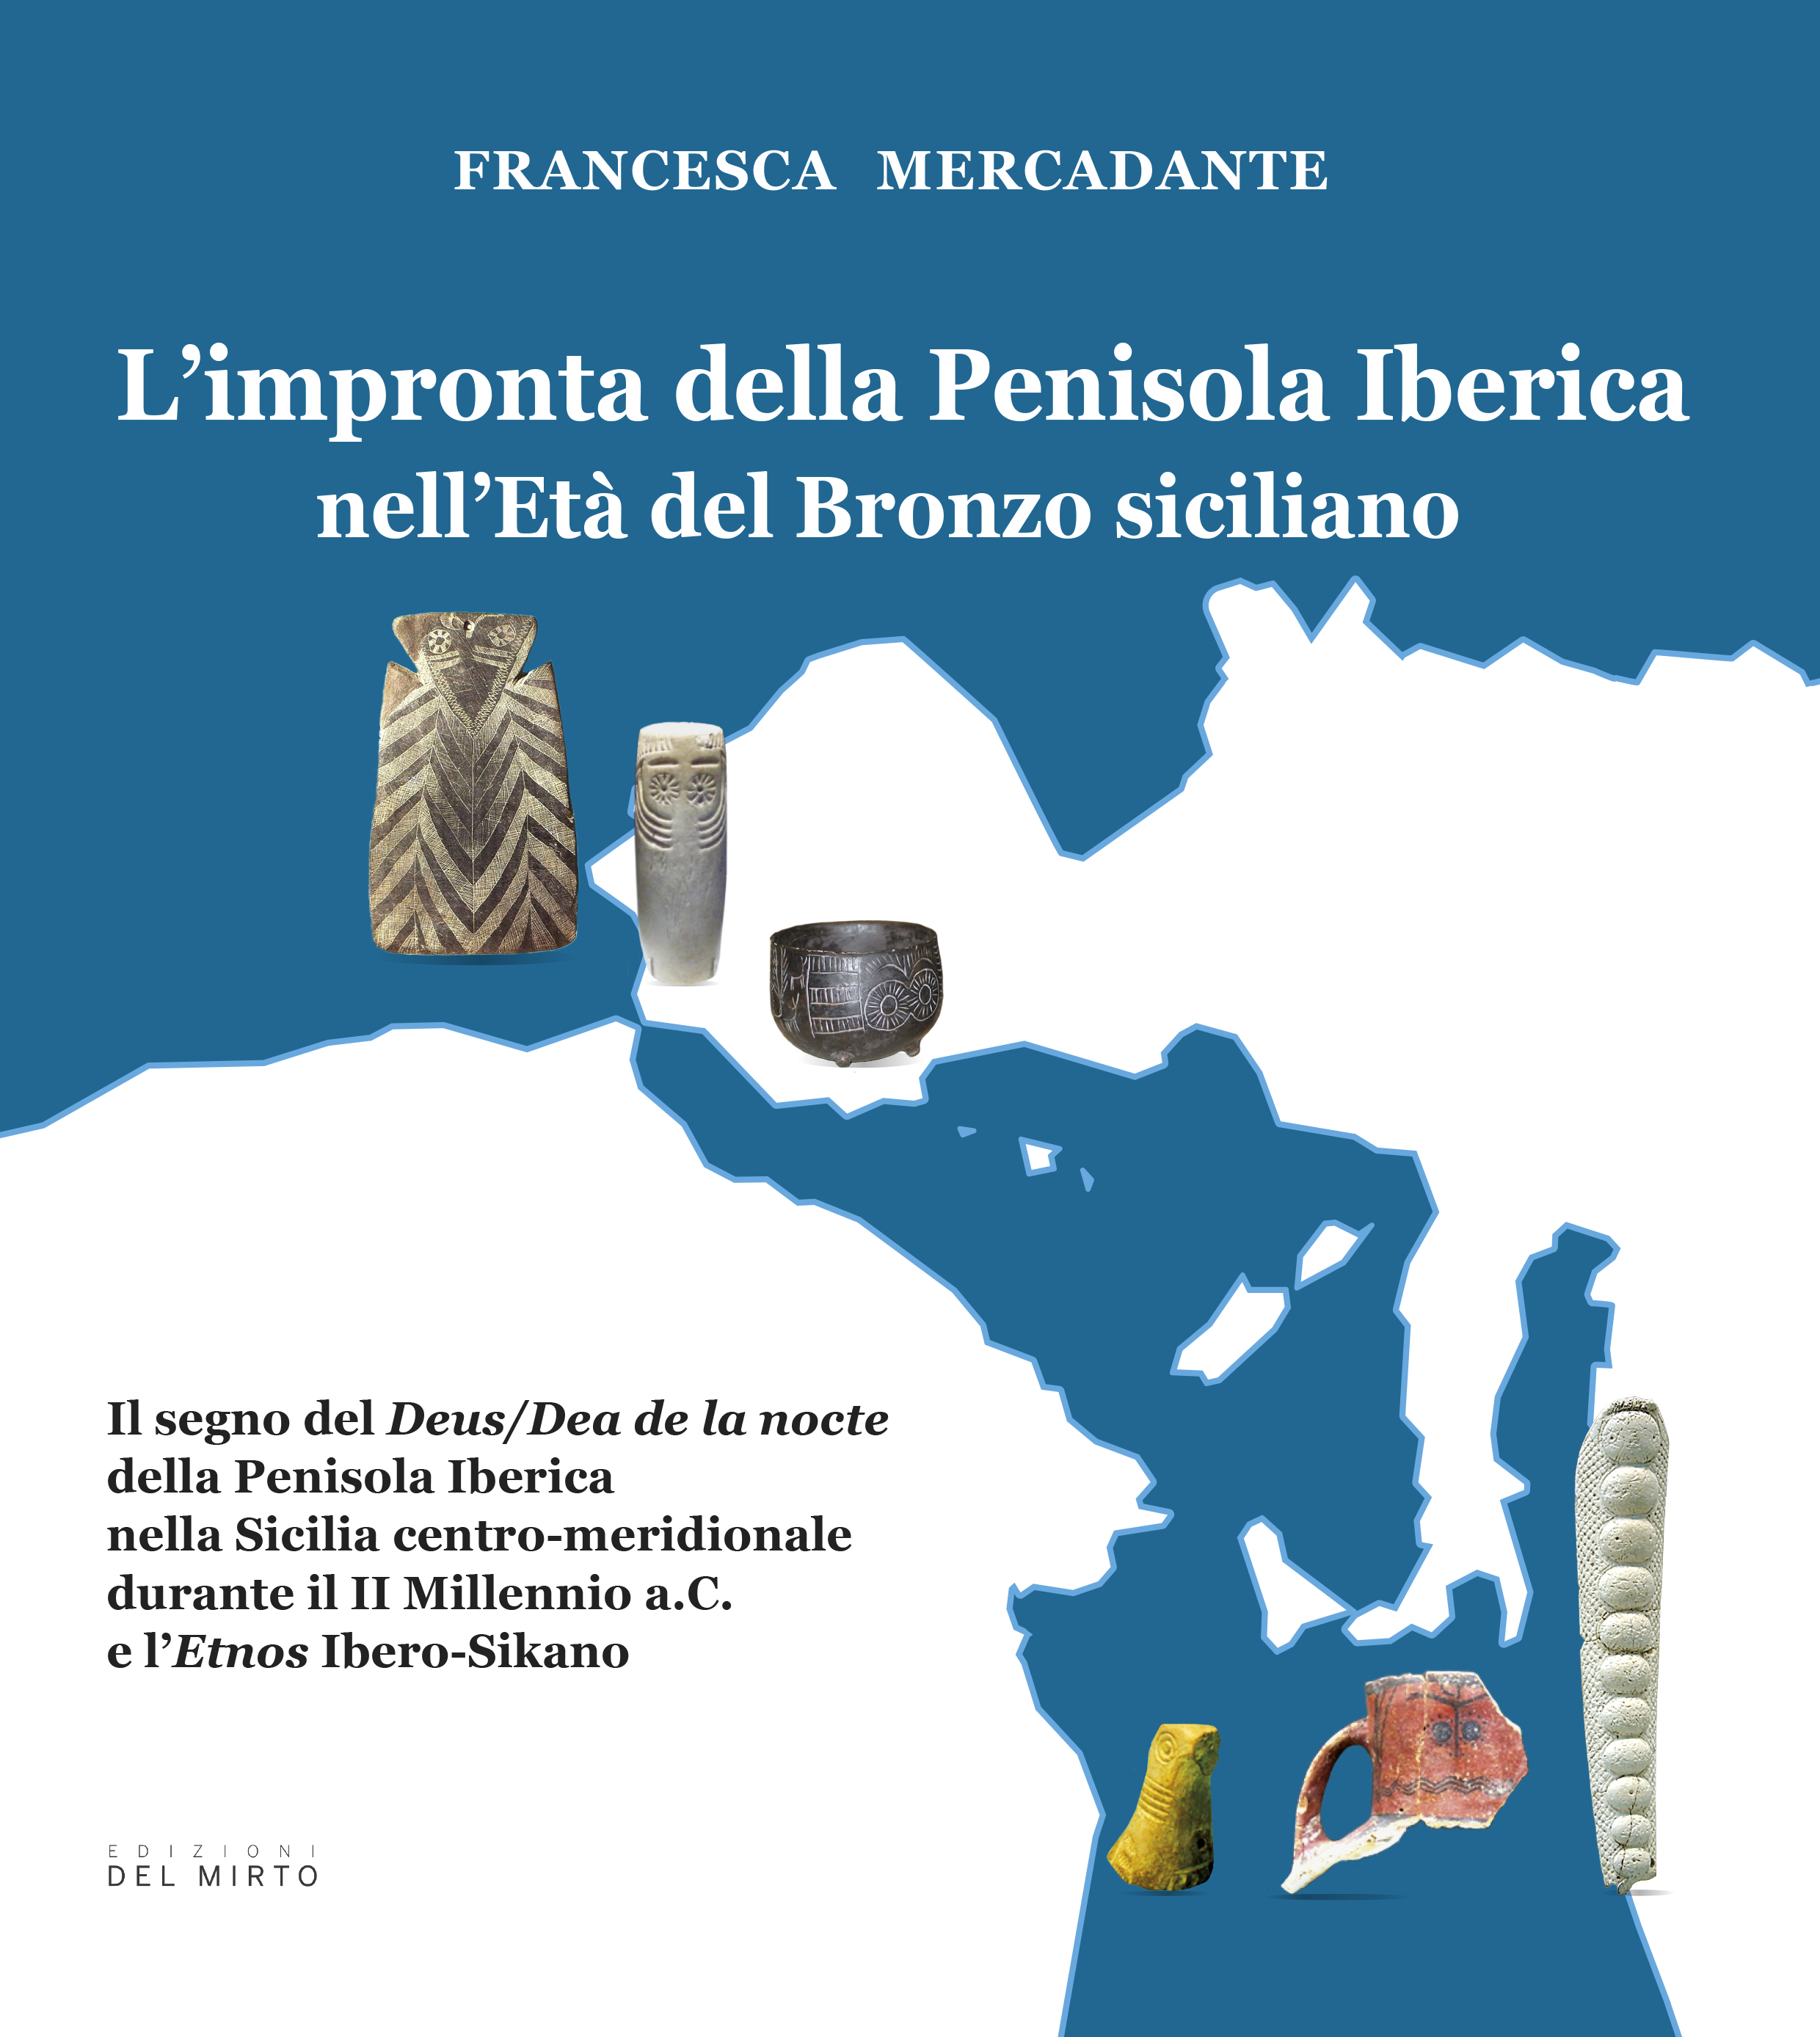 Francesca Mercadante  "L’impronta della Penisola Iberica nell’Età del Bronzo siciliano" Edizioni del Mirto